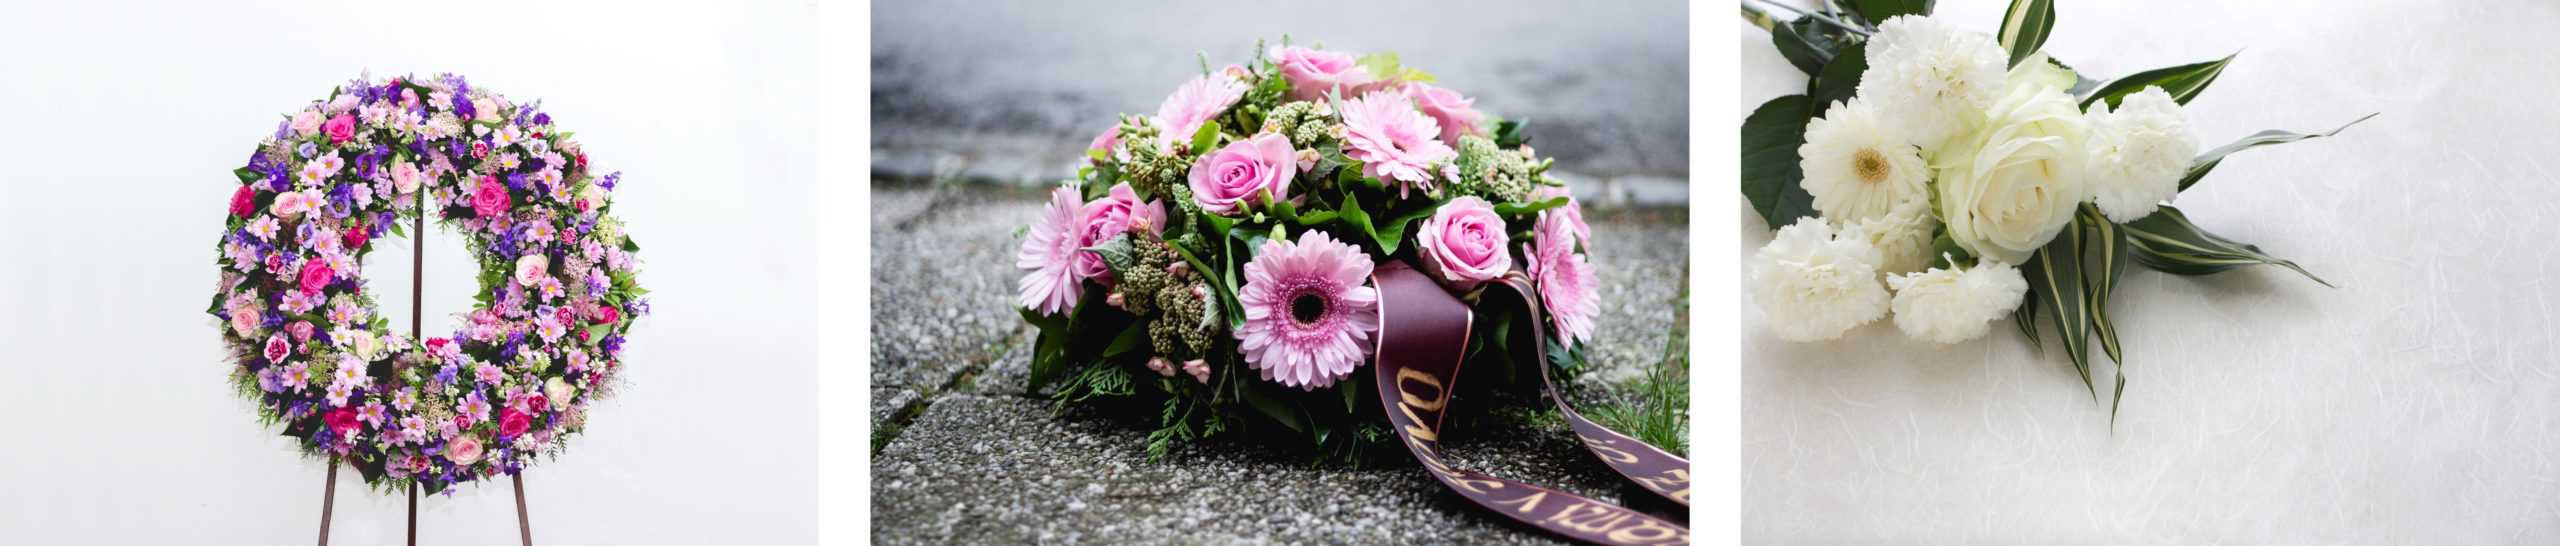 Kwiaty na pogrzeb - jakie wybrać?